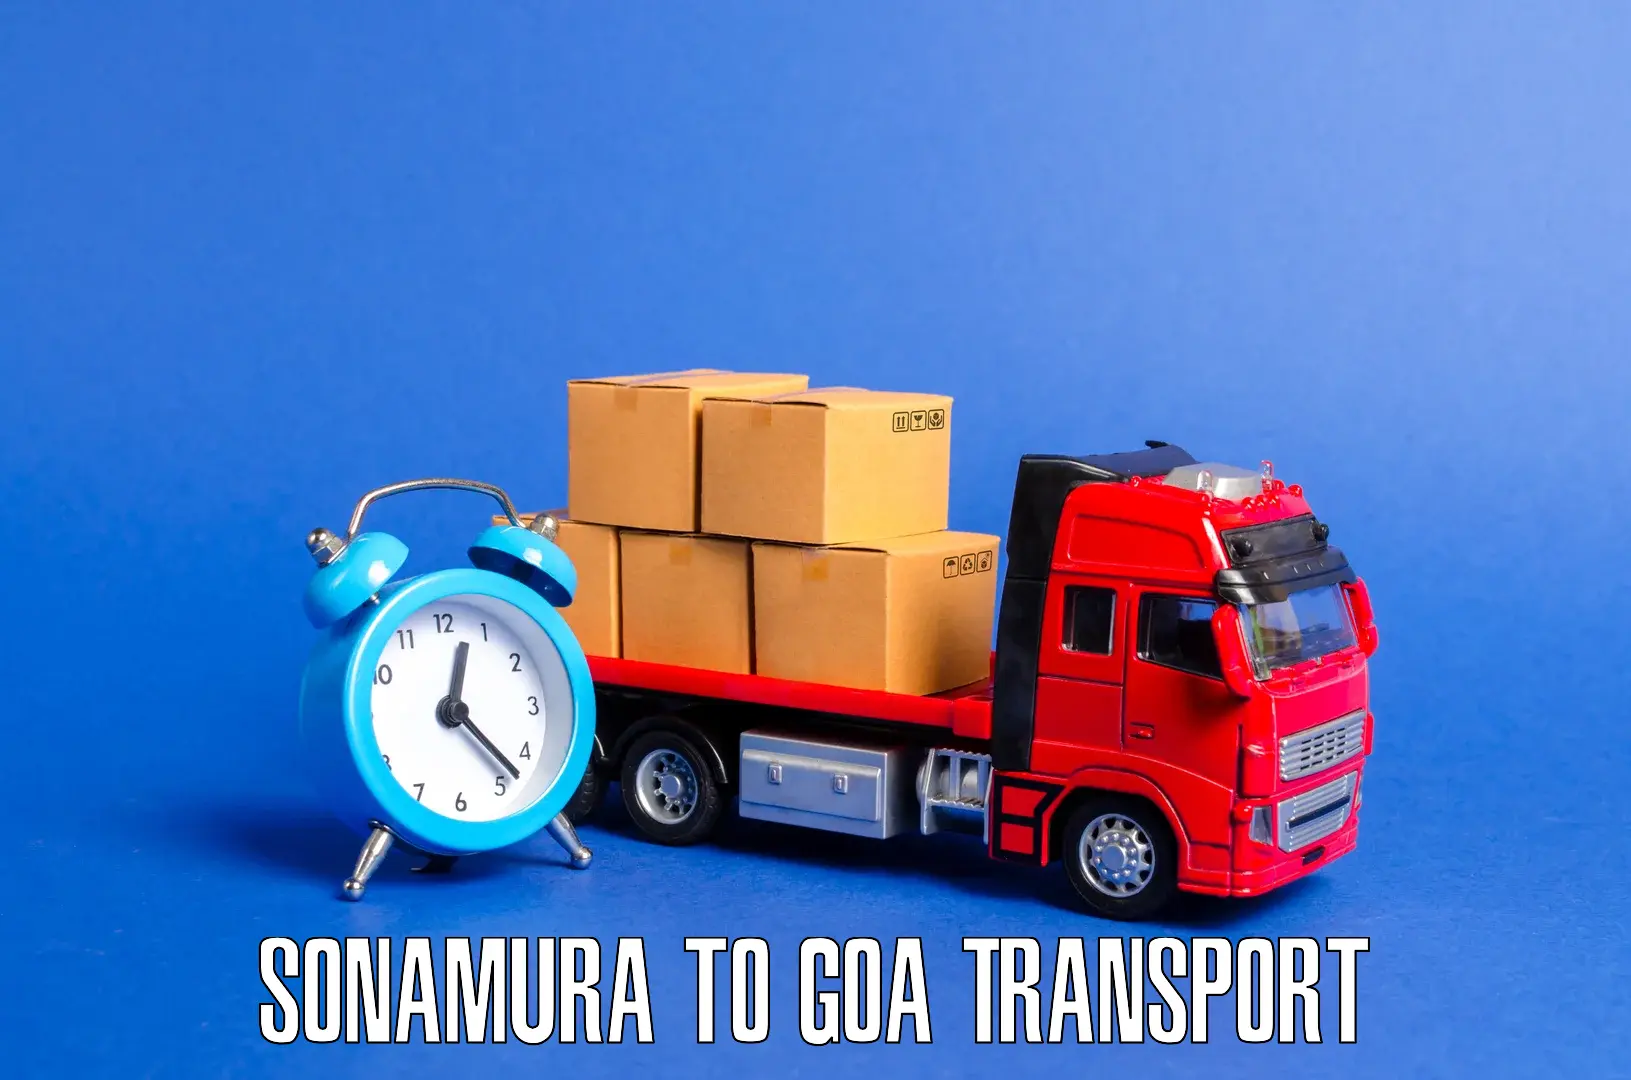 Air freight transport services Sonamura to Panaji